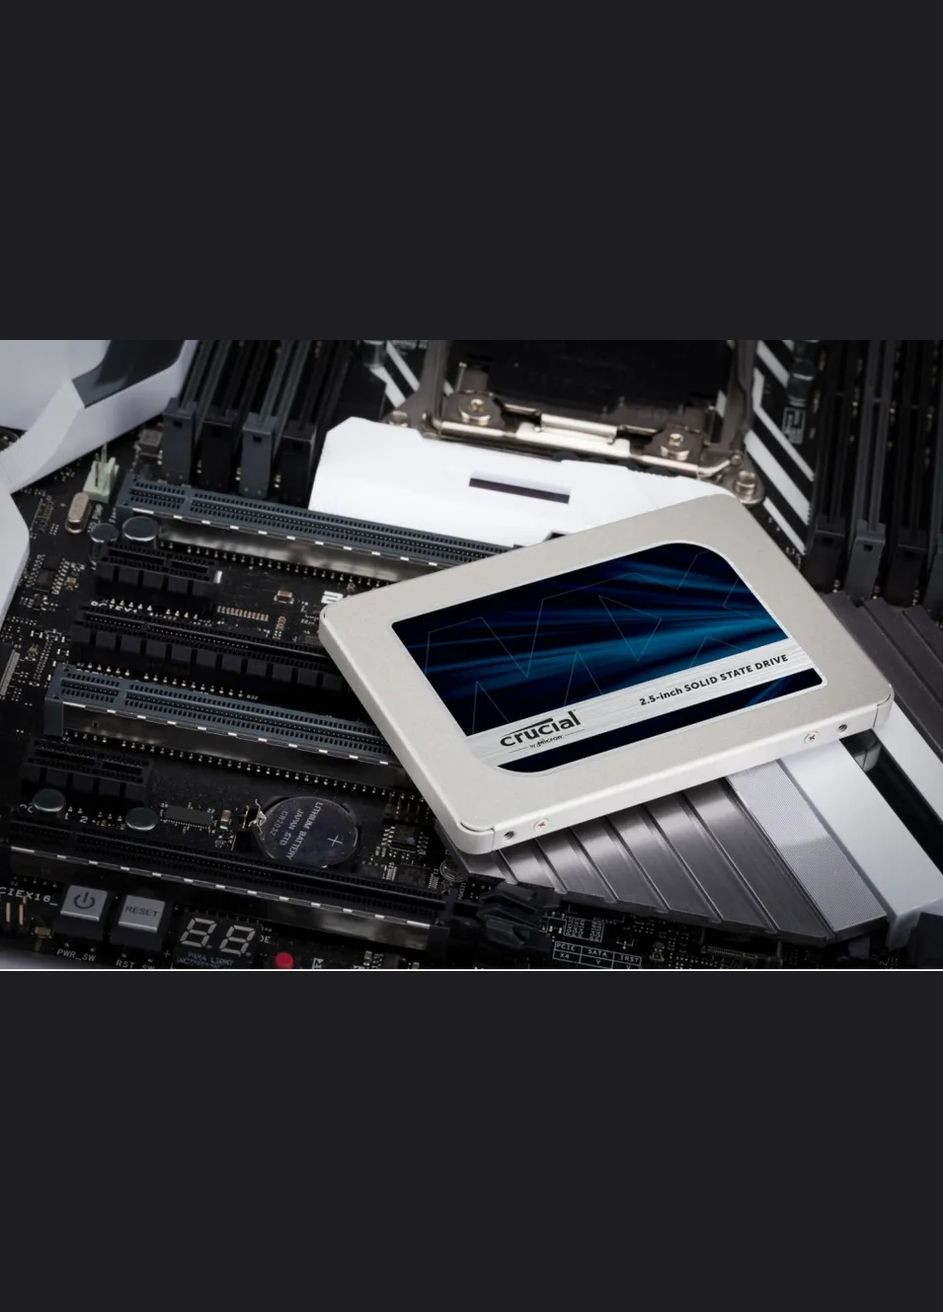 Твердотільний SSD накопичувач MX500 2,5” SATA 4000 ГБ Crucial (292324169)